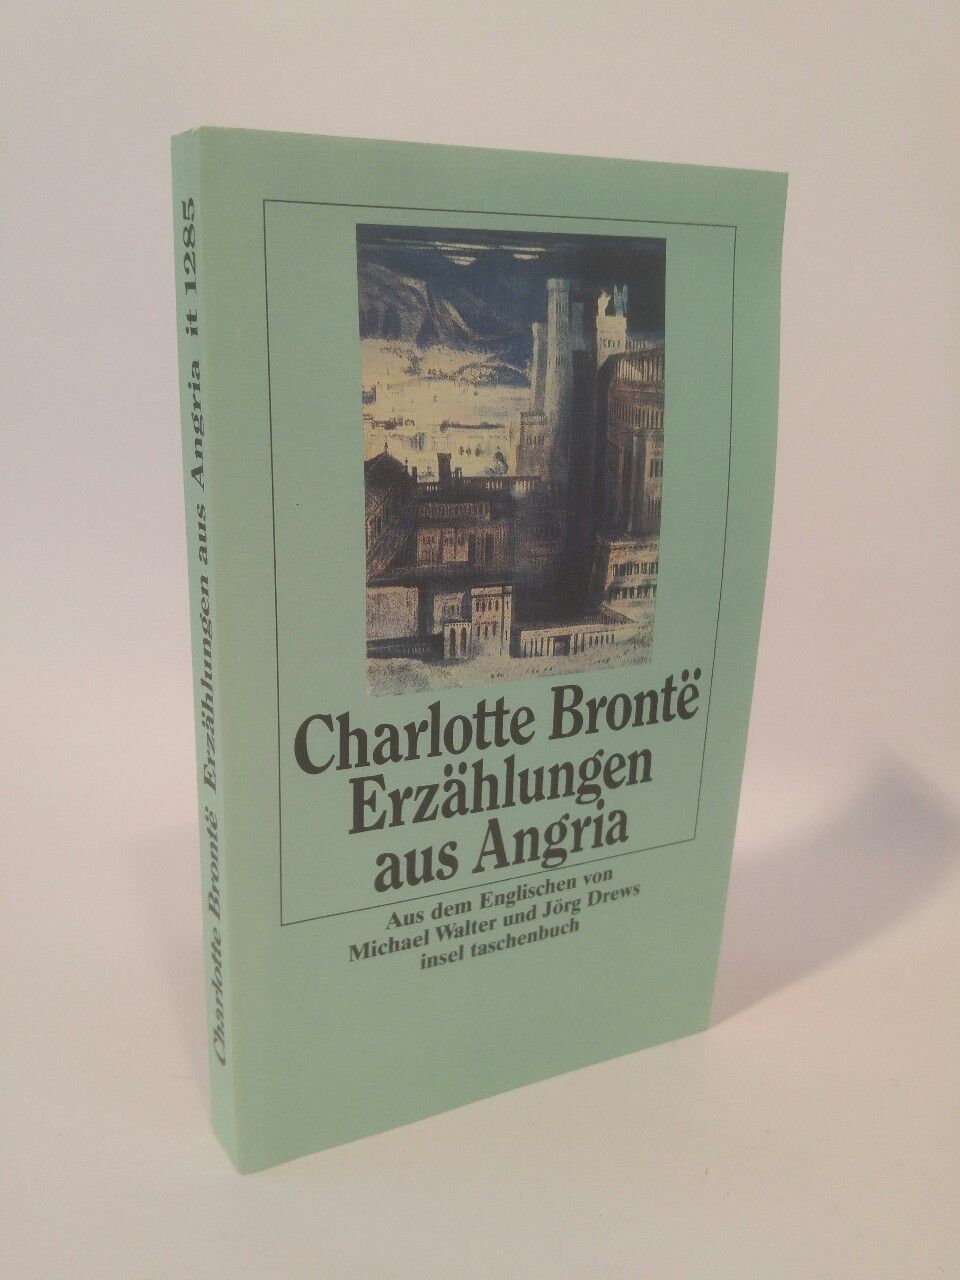 Erzählungen aus Angria - Bronte, Charlotte, Jörg Drews (aus d. Englischen übertragen) Michael Walter (aus d. Englischen übertragen)  u. a.